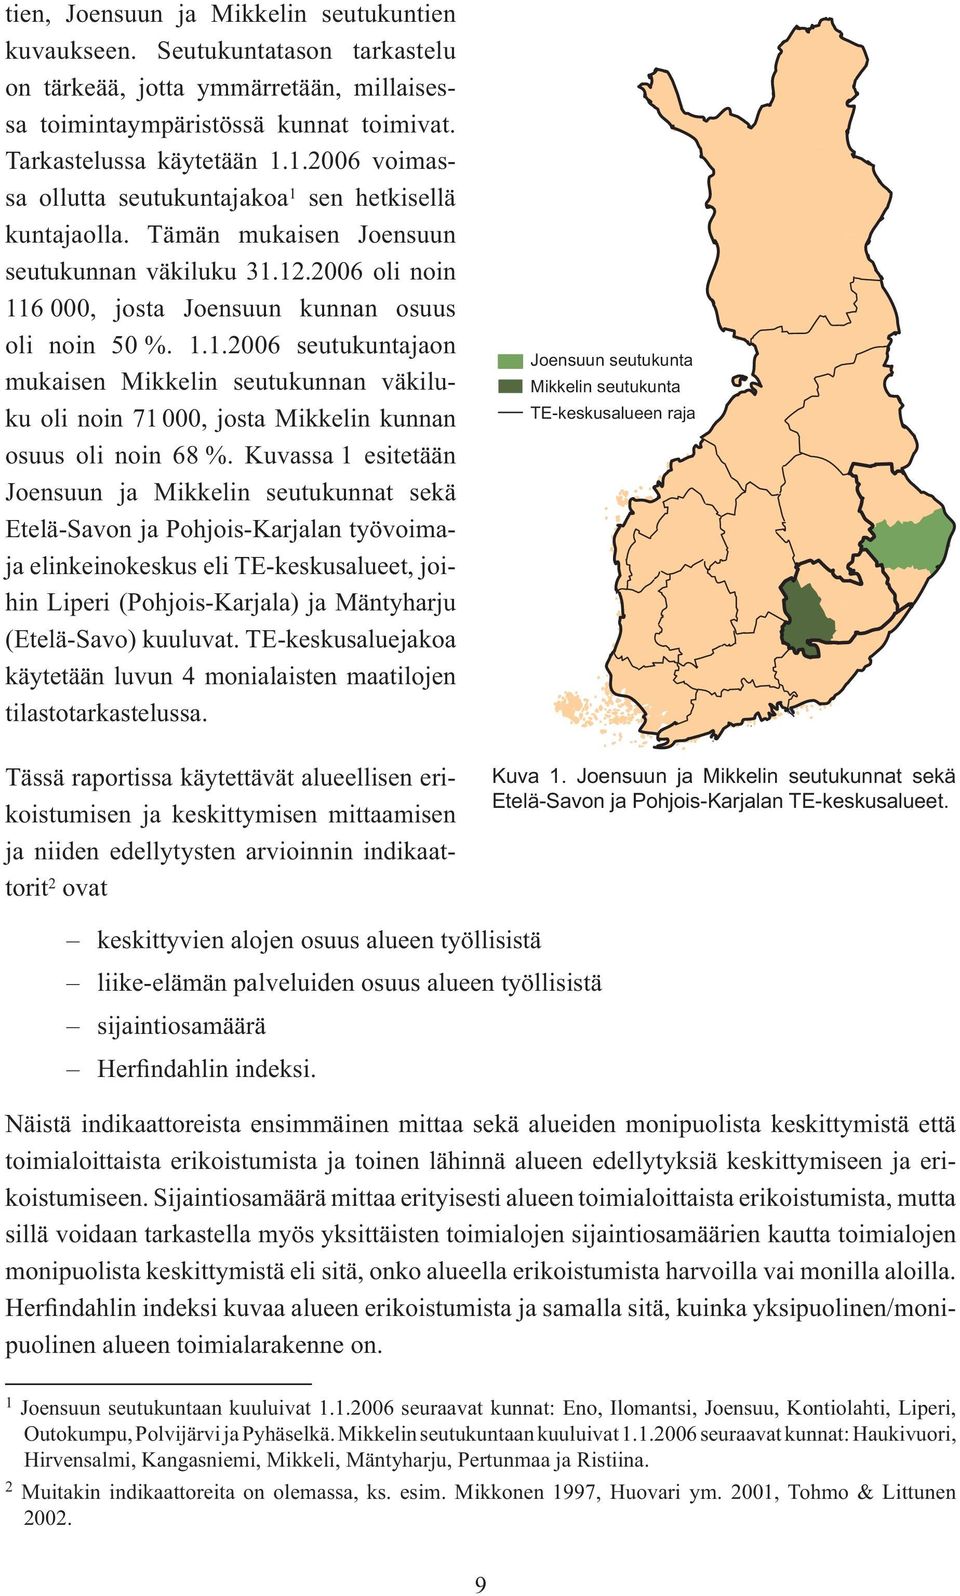 Kuvassa 1 esitetään Joensuun ja Mikkelin seutukunnat sekä Etelä-Savon ja Pohjois-Karjalan työvoimaja elinkeinokeskus eli TE-keskusalueet, joihin Liperi (Pohjois-Karjala) ja Mäntyharju (Etelä-Savo)